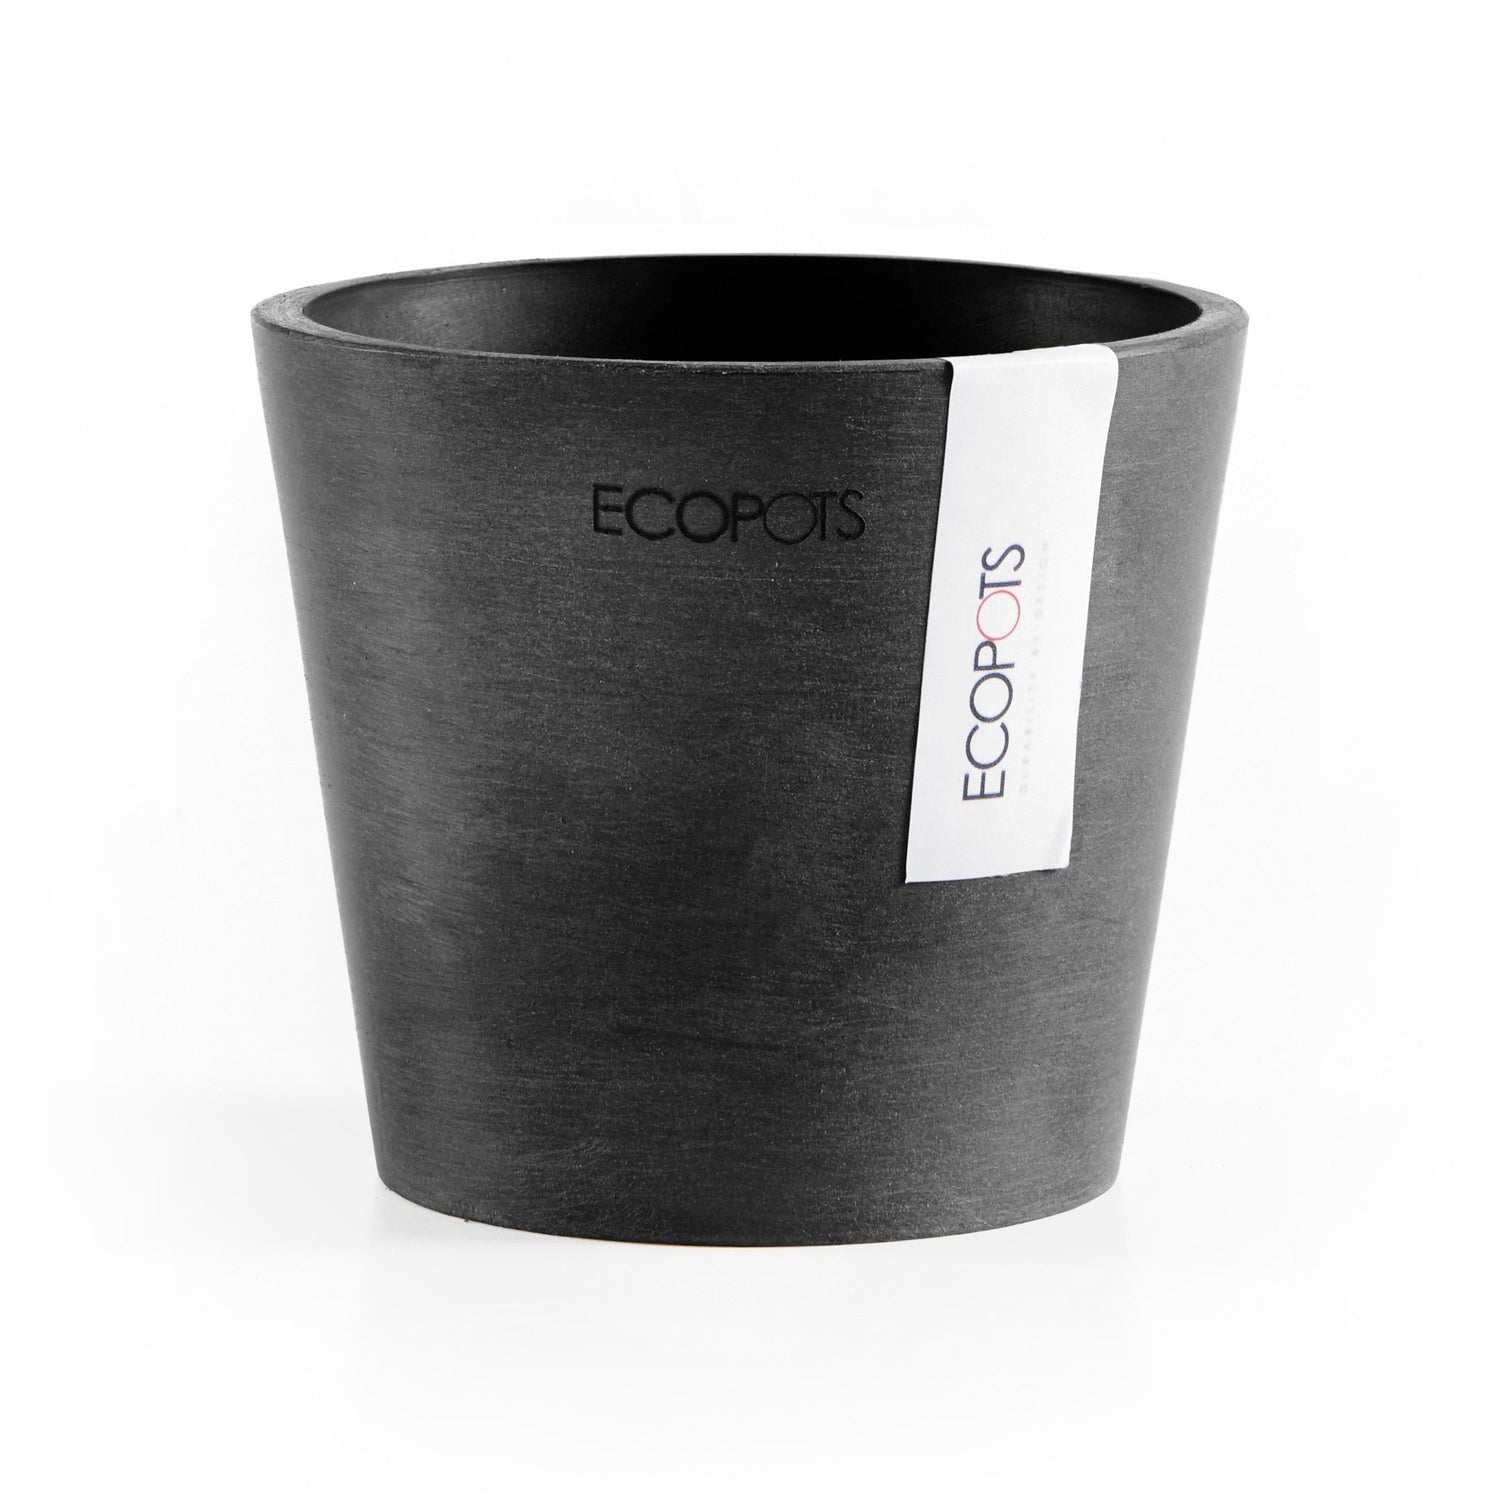 Kukkaruukku - Ecopots - Amsterdam 10,5cm tummanharmaa - Ecopotskauppa - Uuden aikakauden kukkaruukku